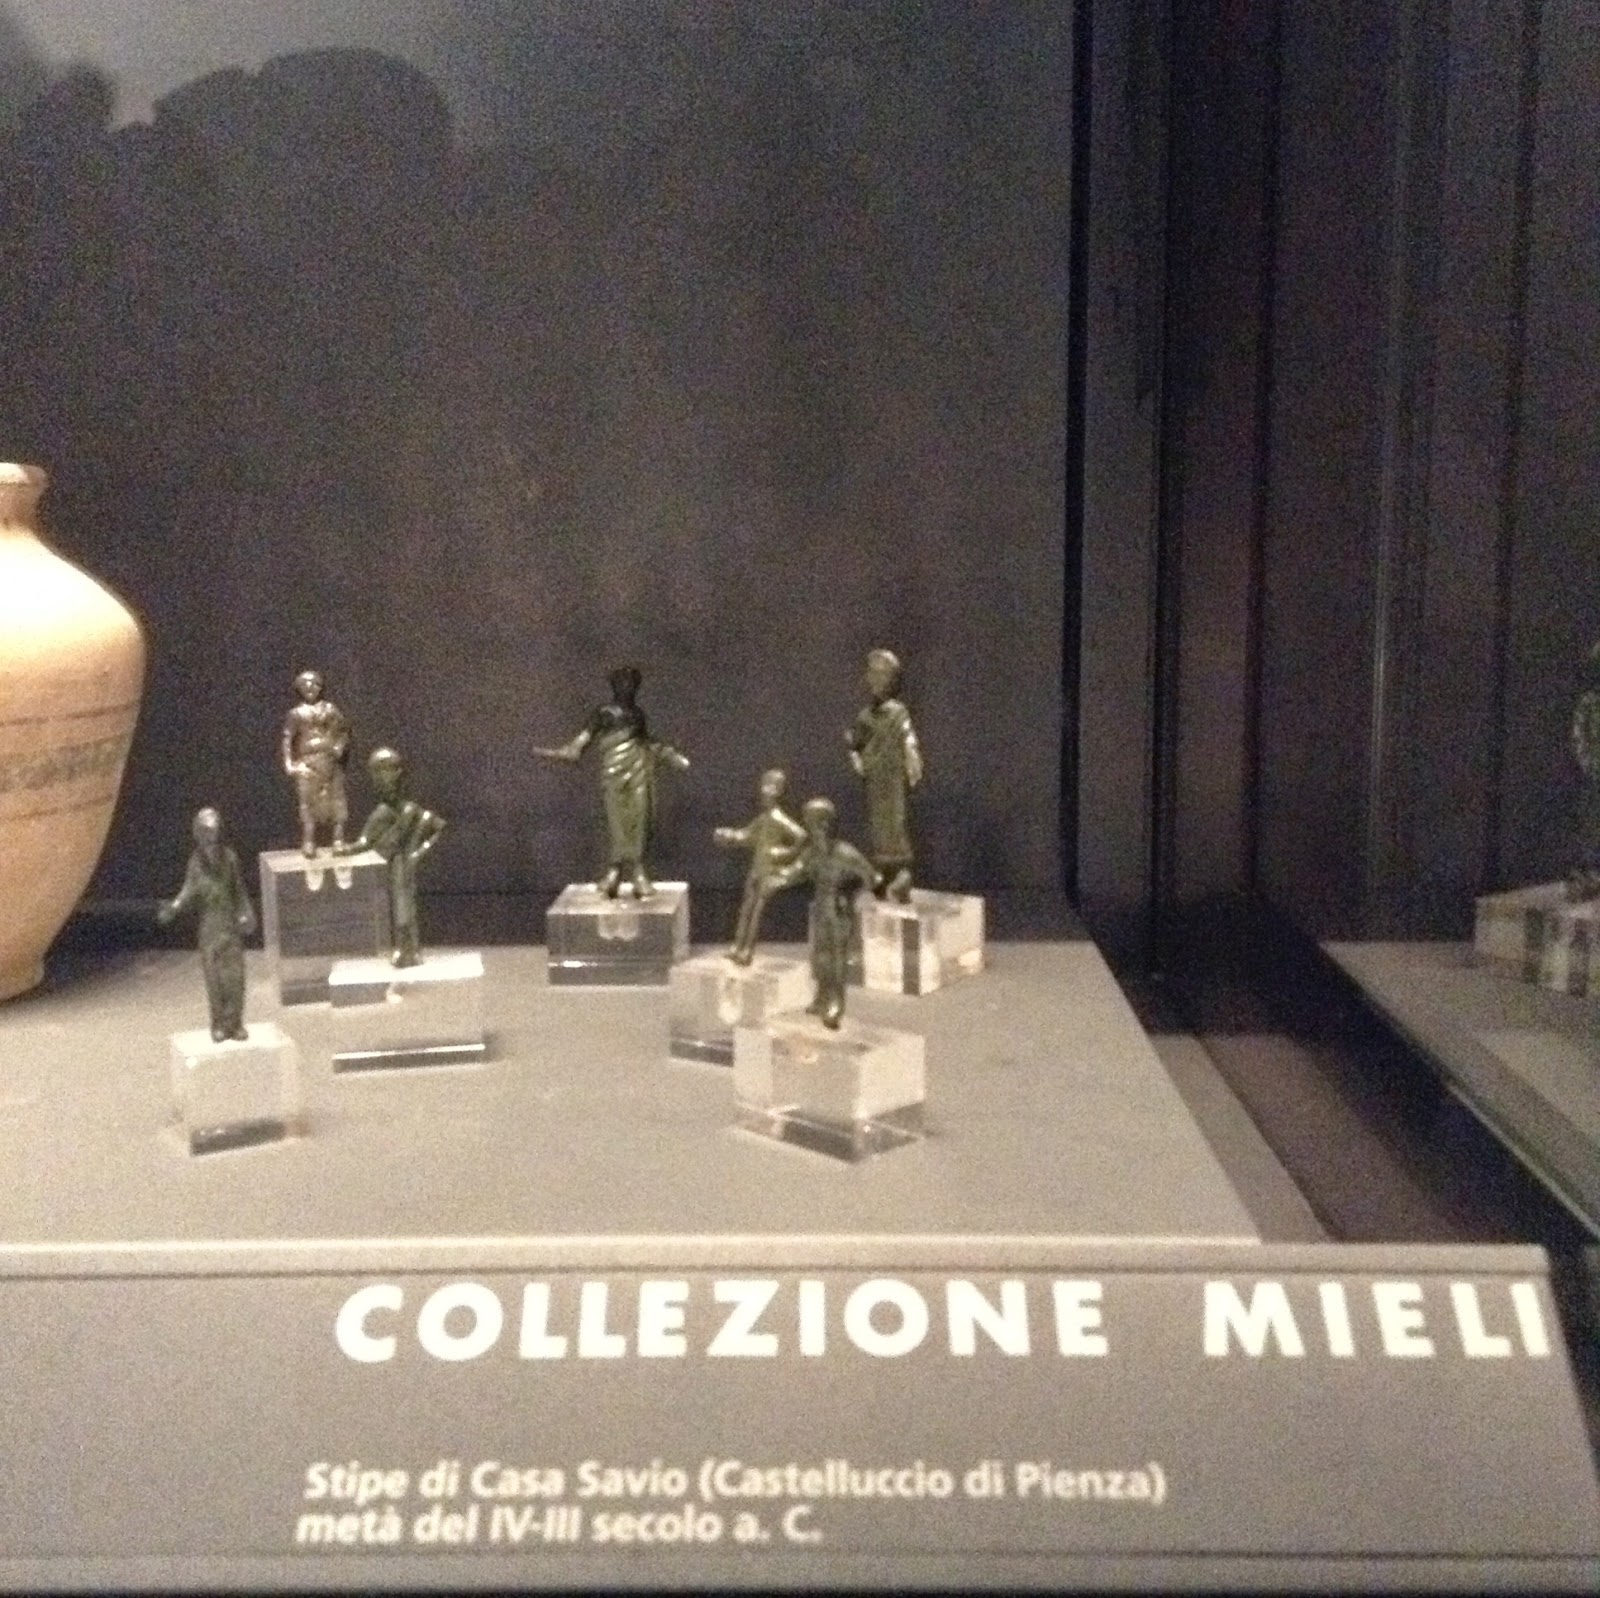 Museo Archeologico di Siena: bronzetti votivi